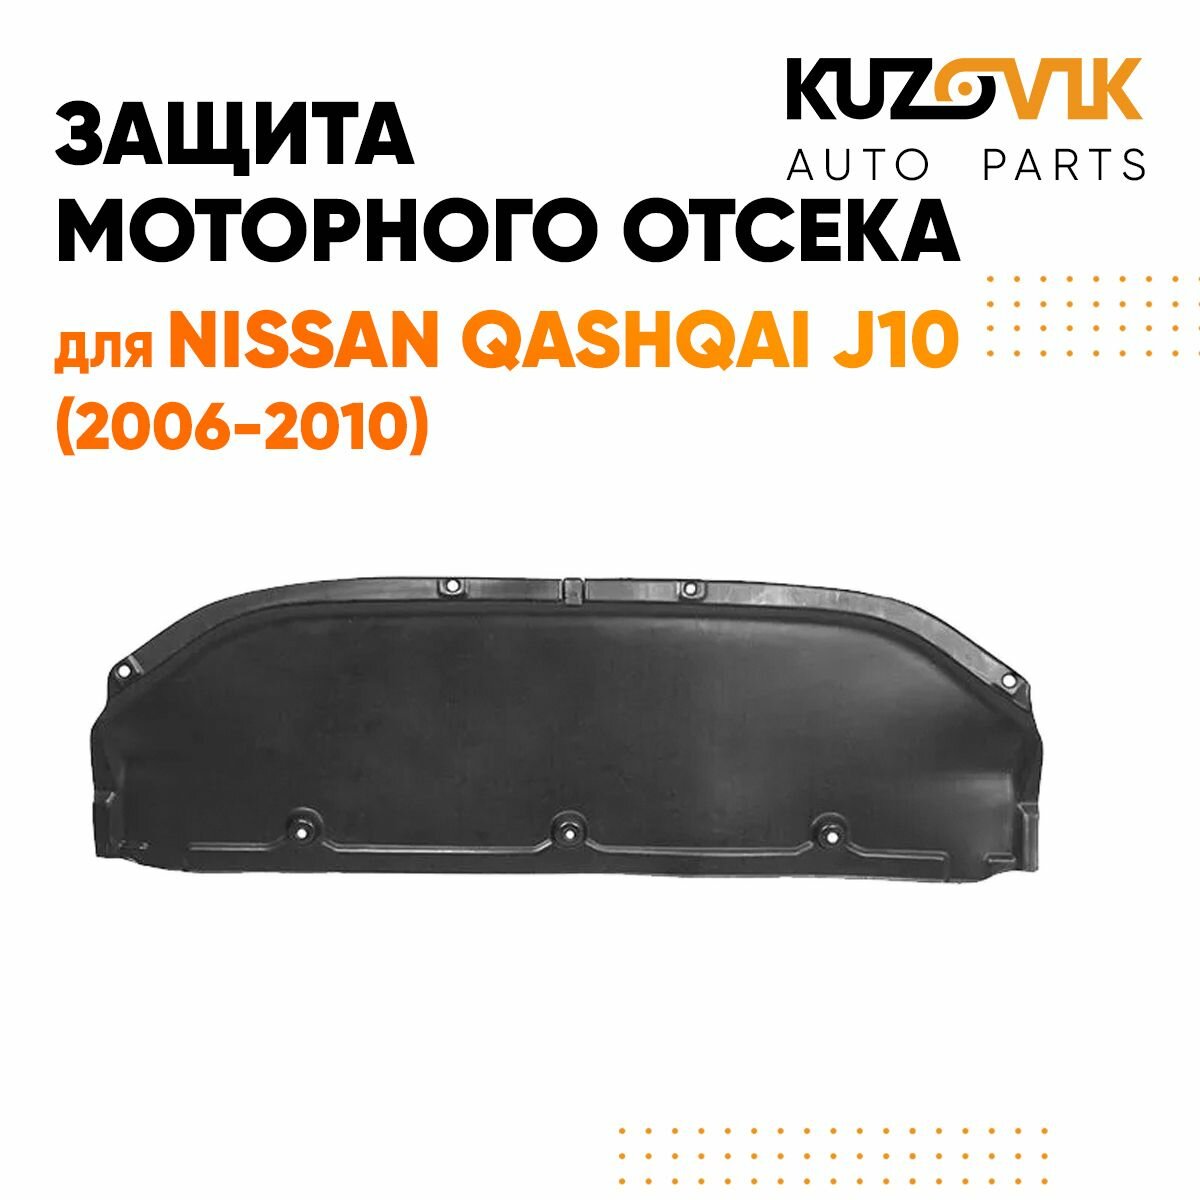 Защита пыльник двигателя Ниссан Кашкай Nissan Qashqai J10 (2006-2013) пластик